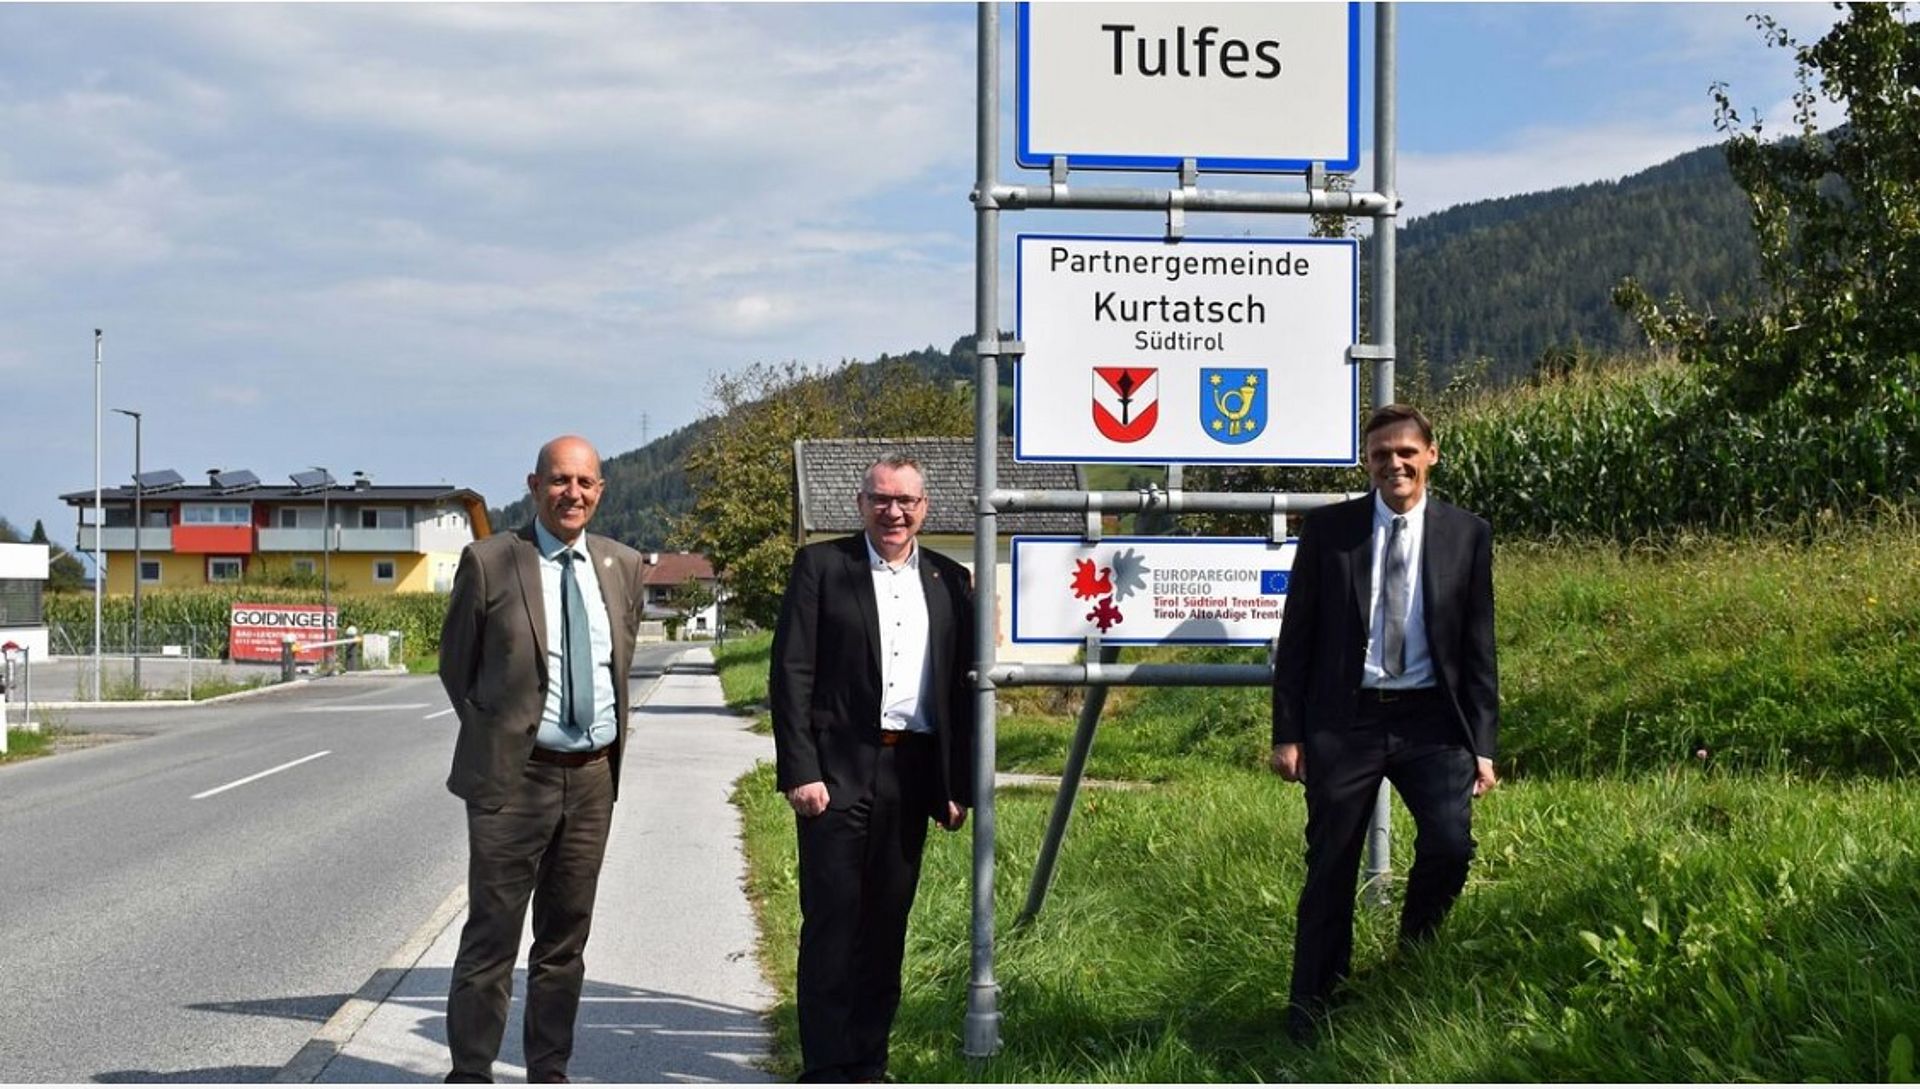 Euregio-Berater Fritz Tiefenthaler, Tiroler Gemeinden-LR Johannes Tratter und Bgm. von Tulfes, Martin Wegscheider, vor dem Euregio-Gemeindepartnerschaftenschild.